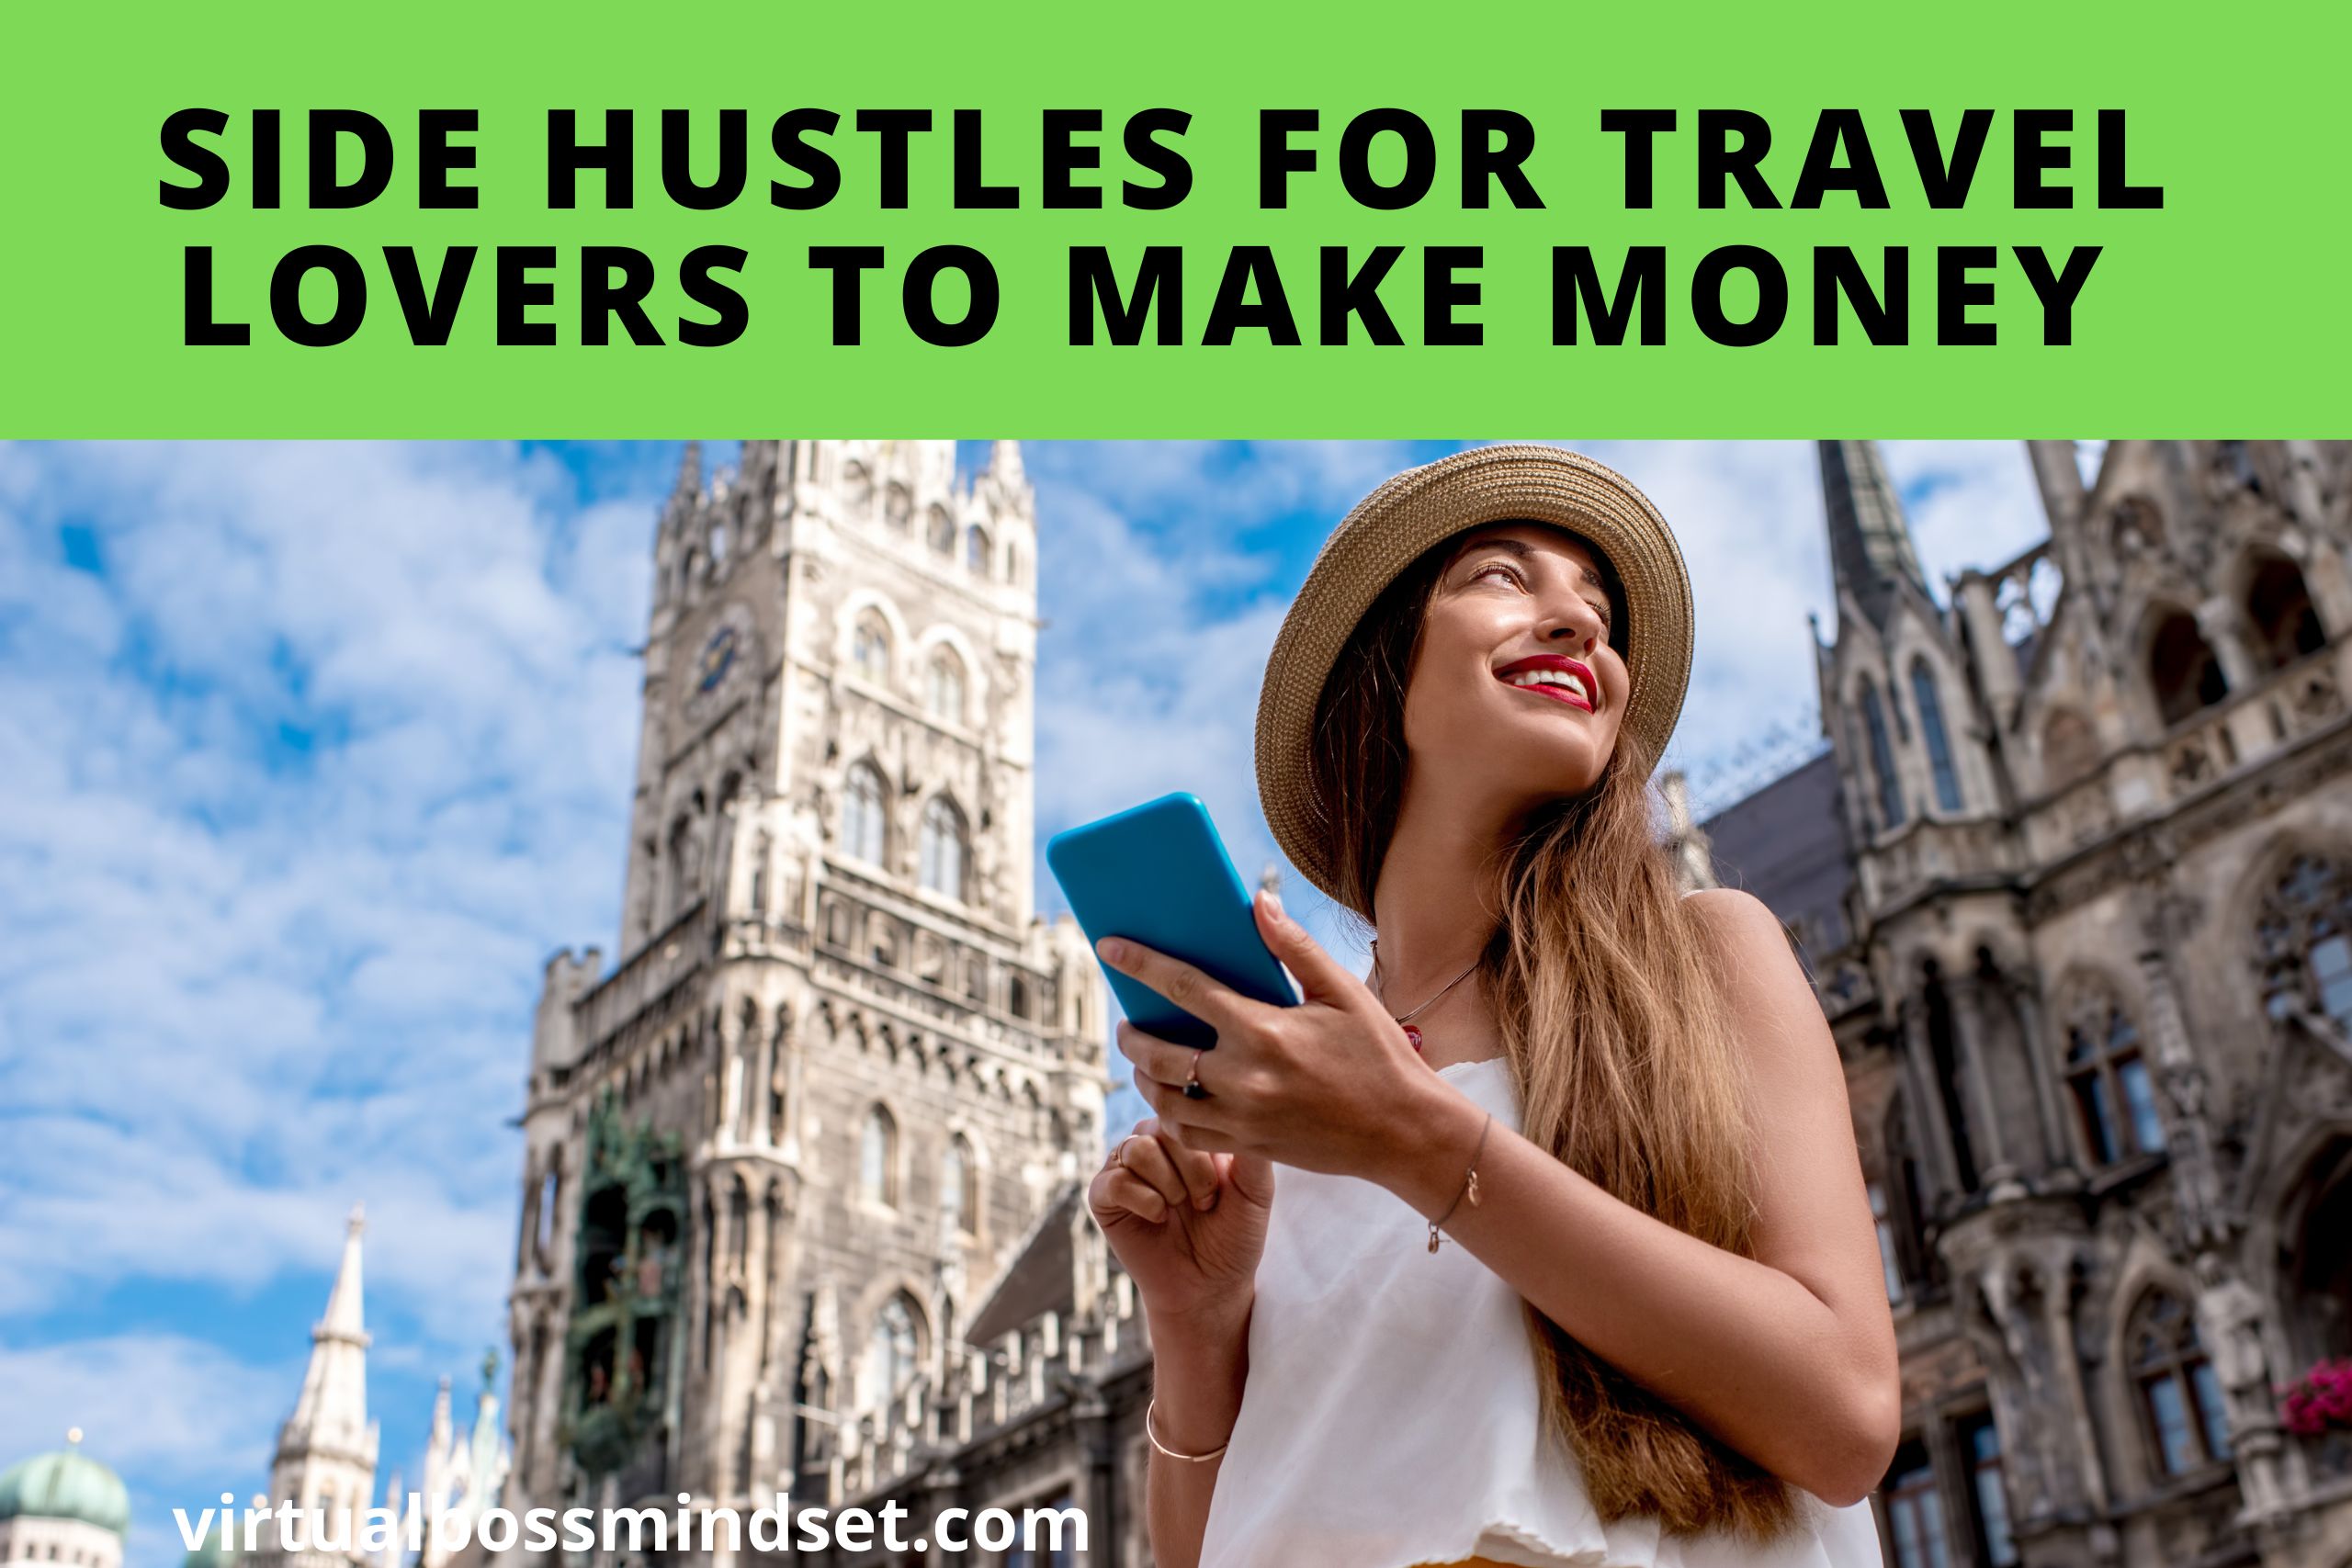 7 Side Hustles for Travel Lovers to Make Money